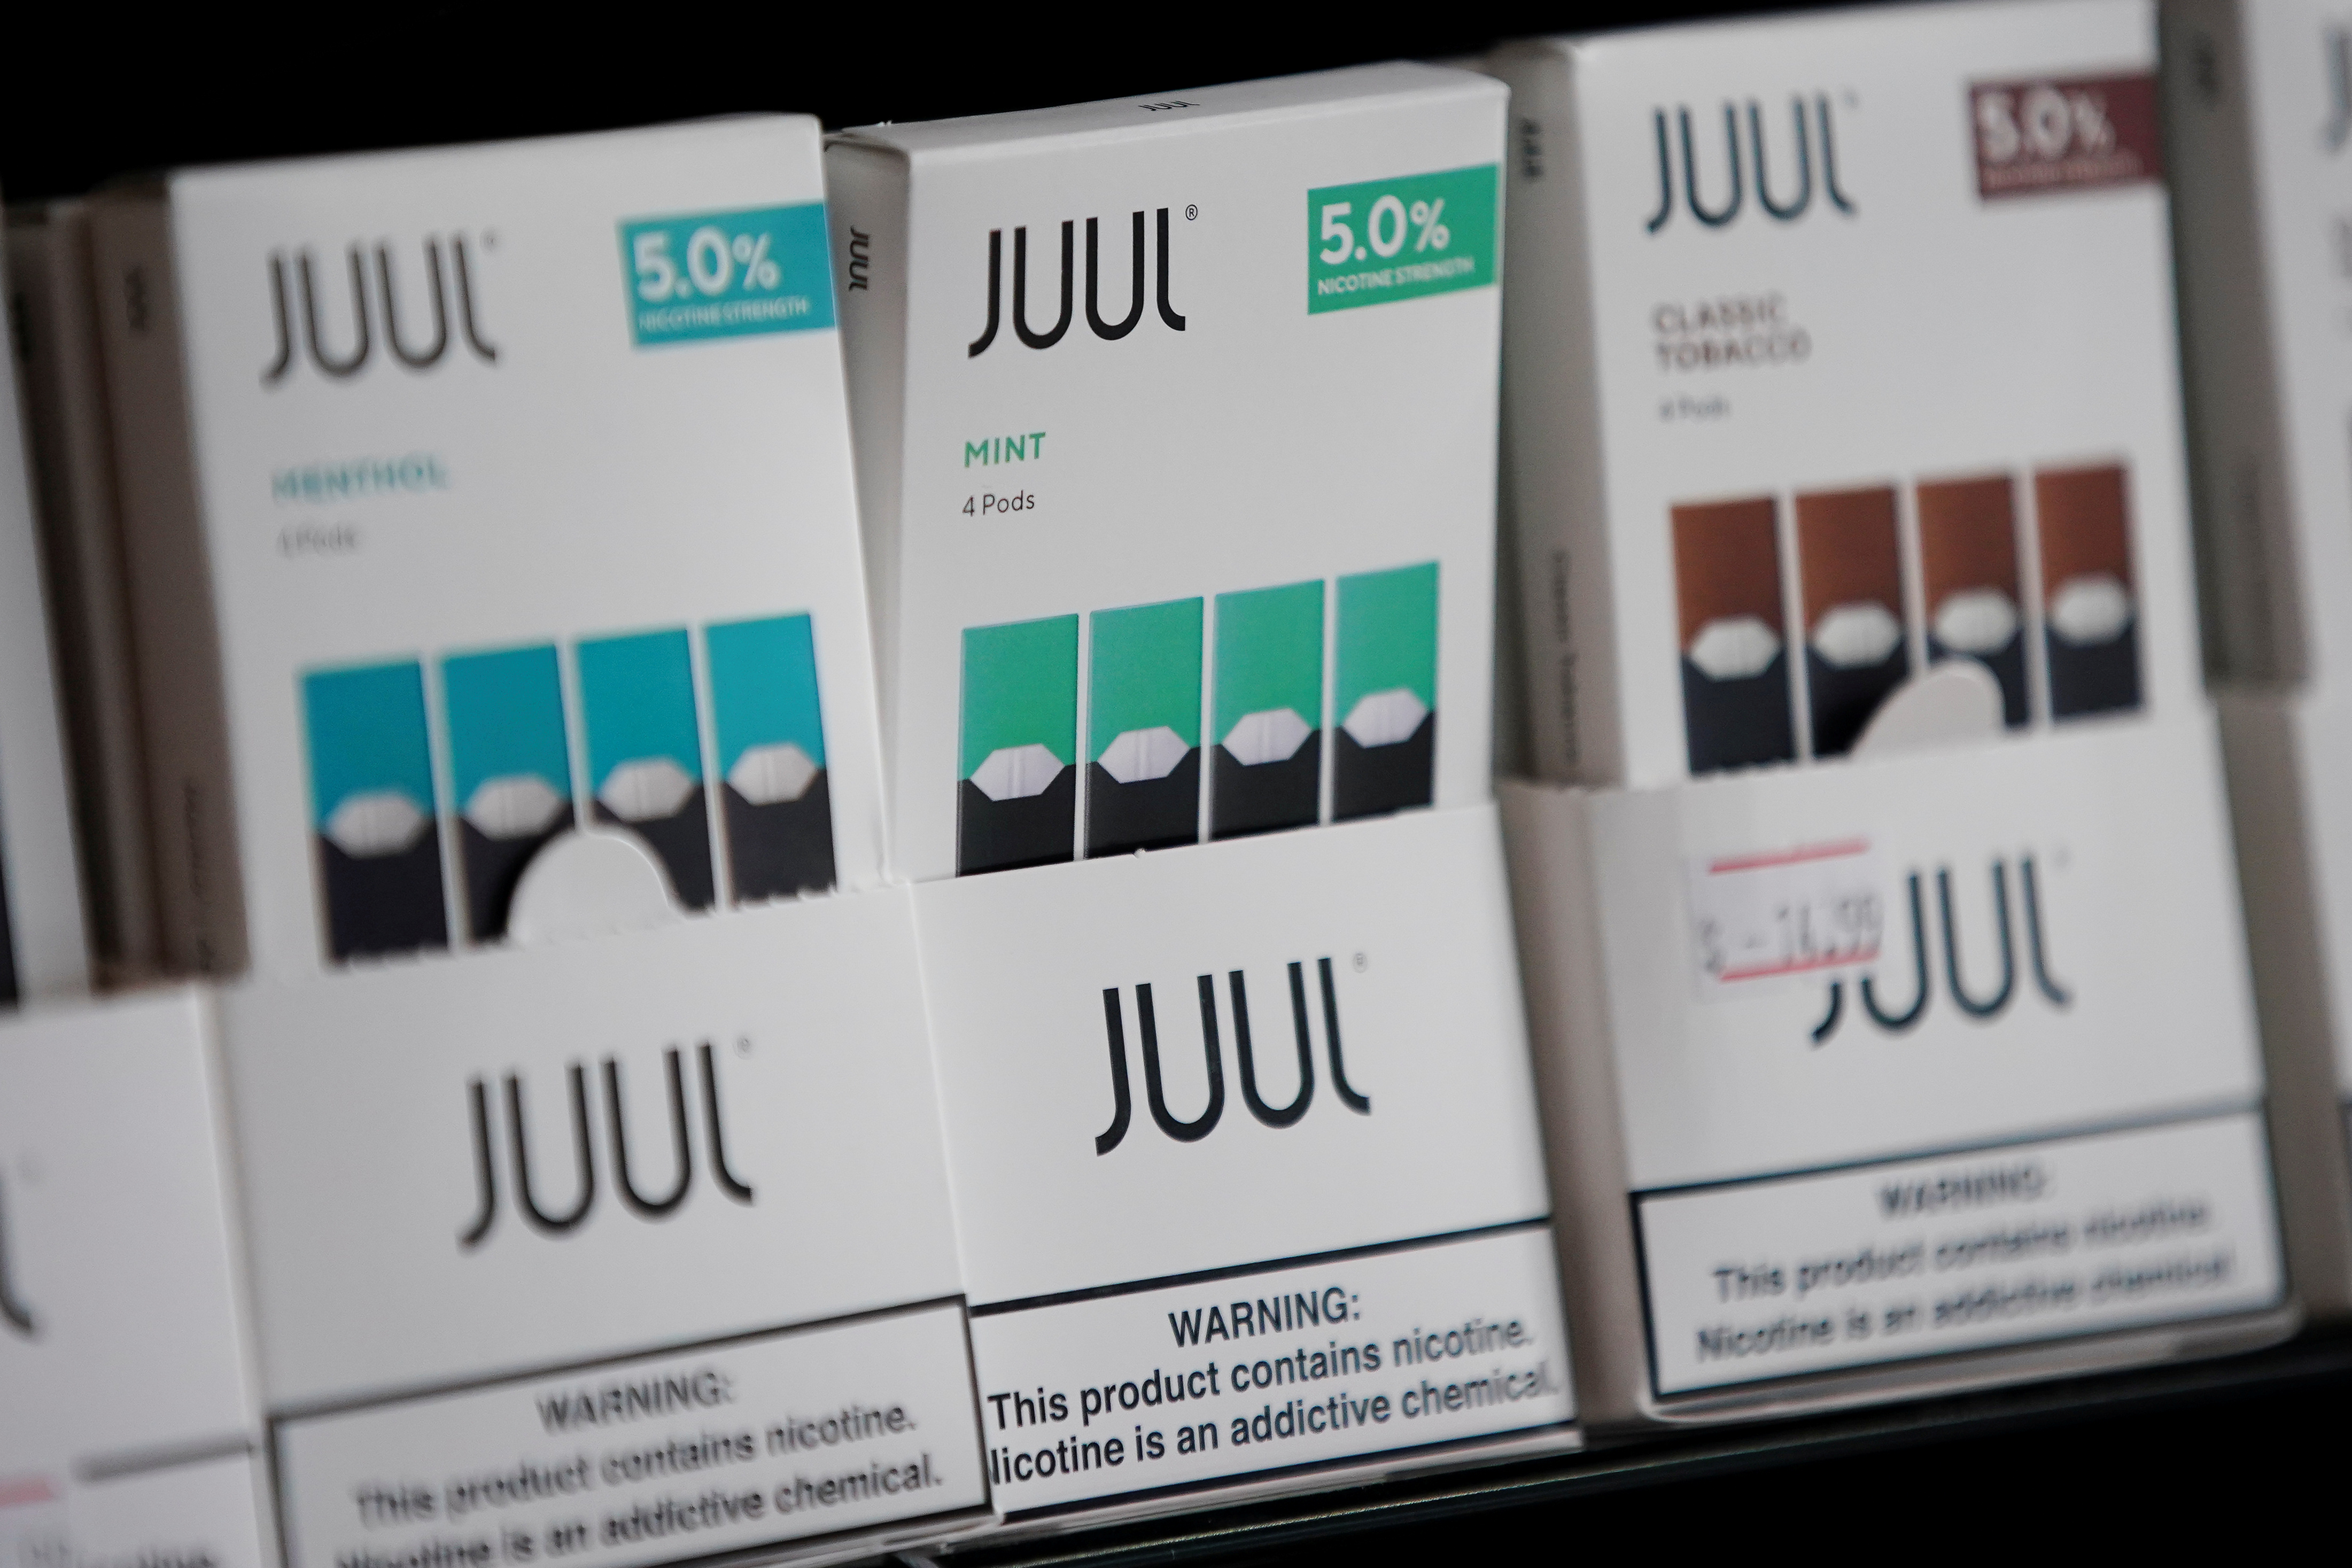 Juul brand vape cartridges for sale at a shop in Atlanta, Georgia, September 26, 2019. REUTERS/Elijah Nouvelage